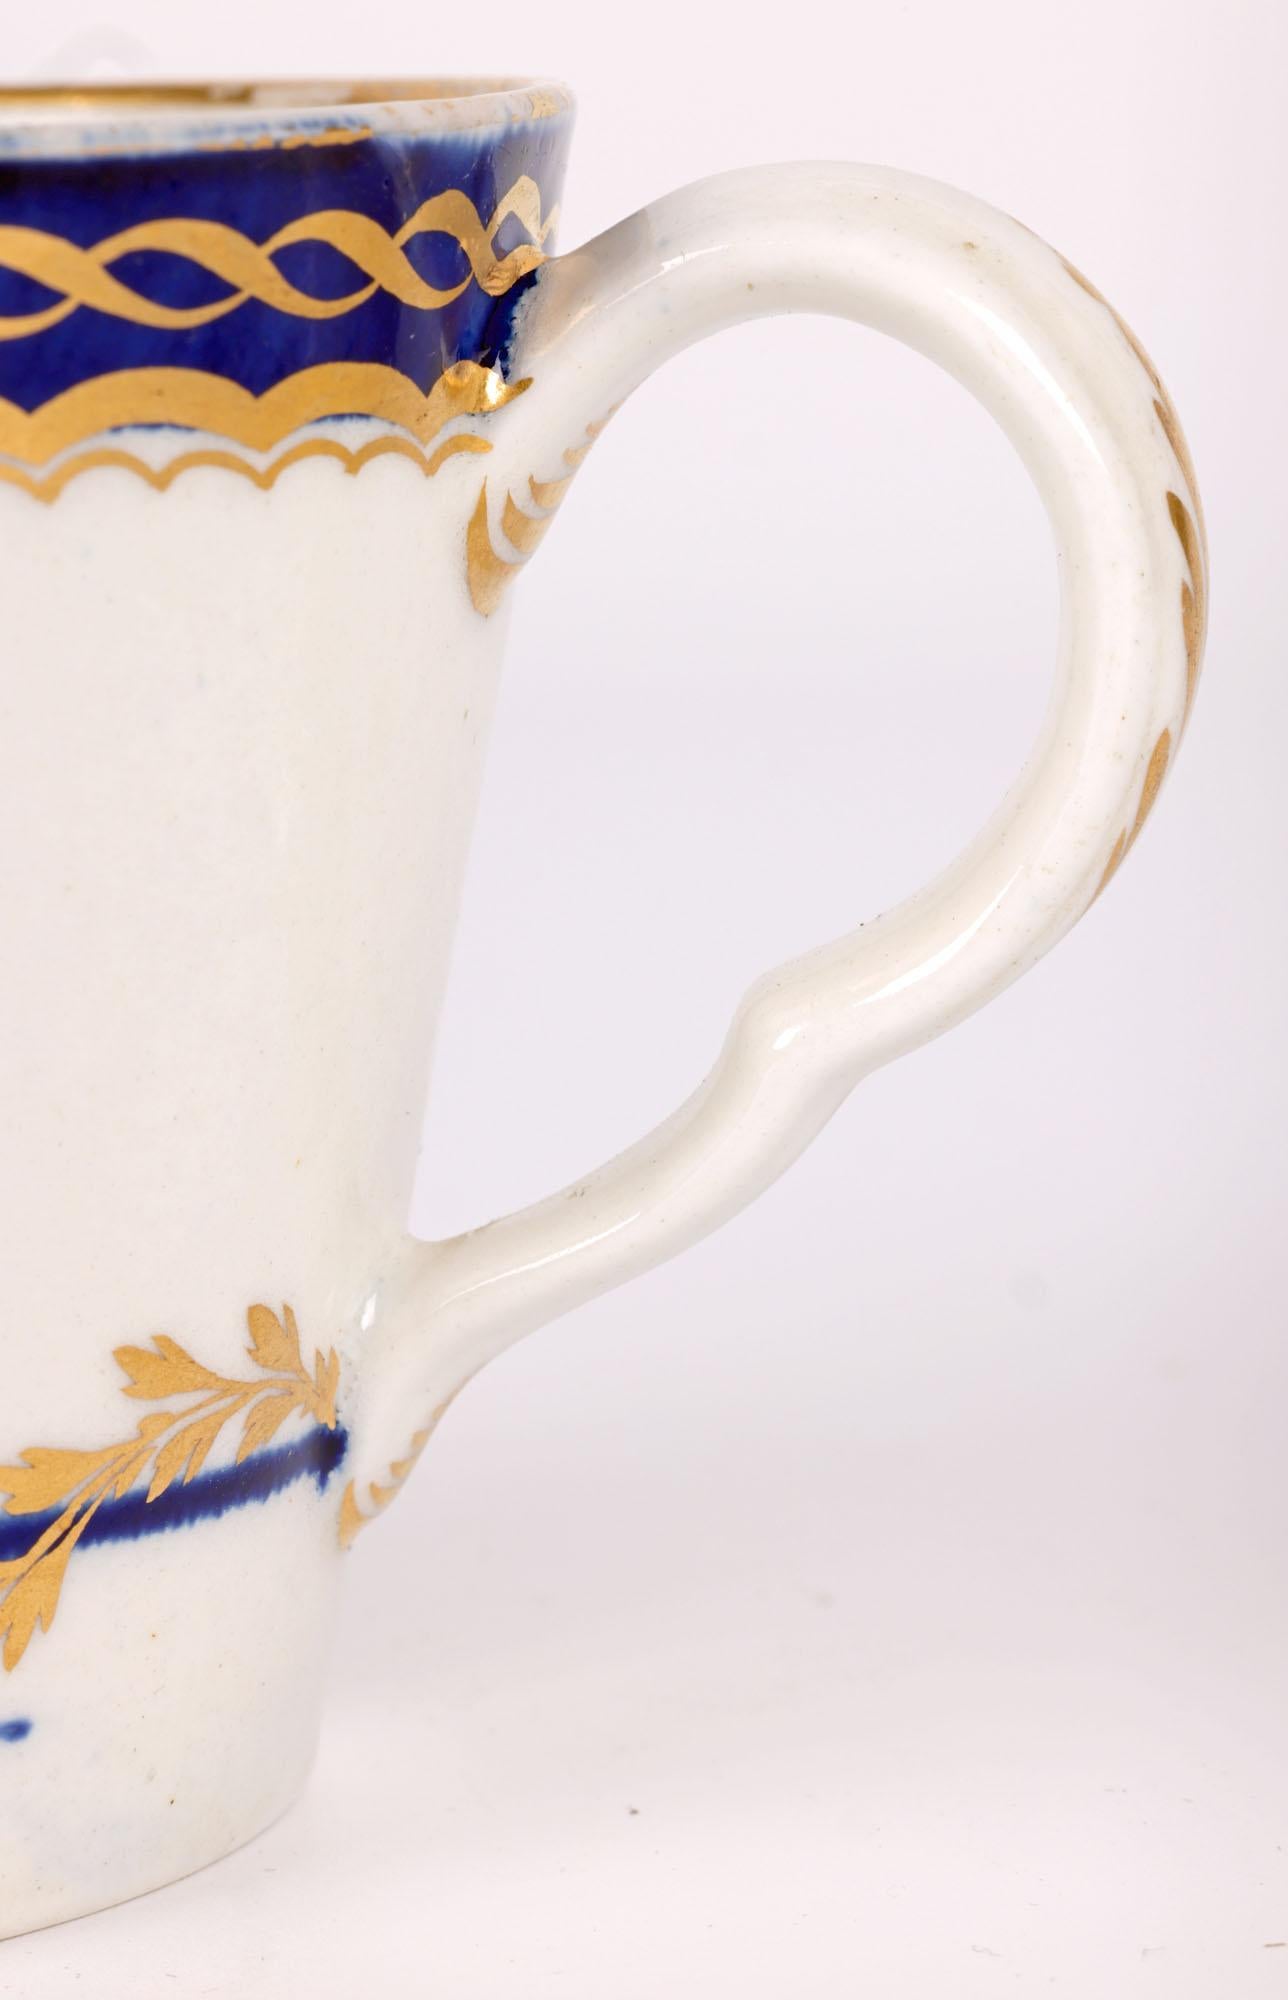 Rare et fine cruche à crème en porcelaine anglaise ancienne décorée de motifs dorés par Caughley et datant d'environ 1780. La cruche en forme de seau repose sur un pied étroit et rond, avec un large sommet rond, un bec verseur en forme de bec et une